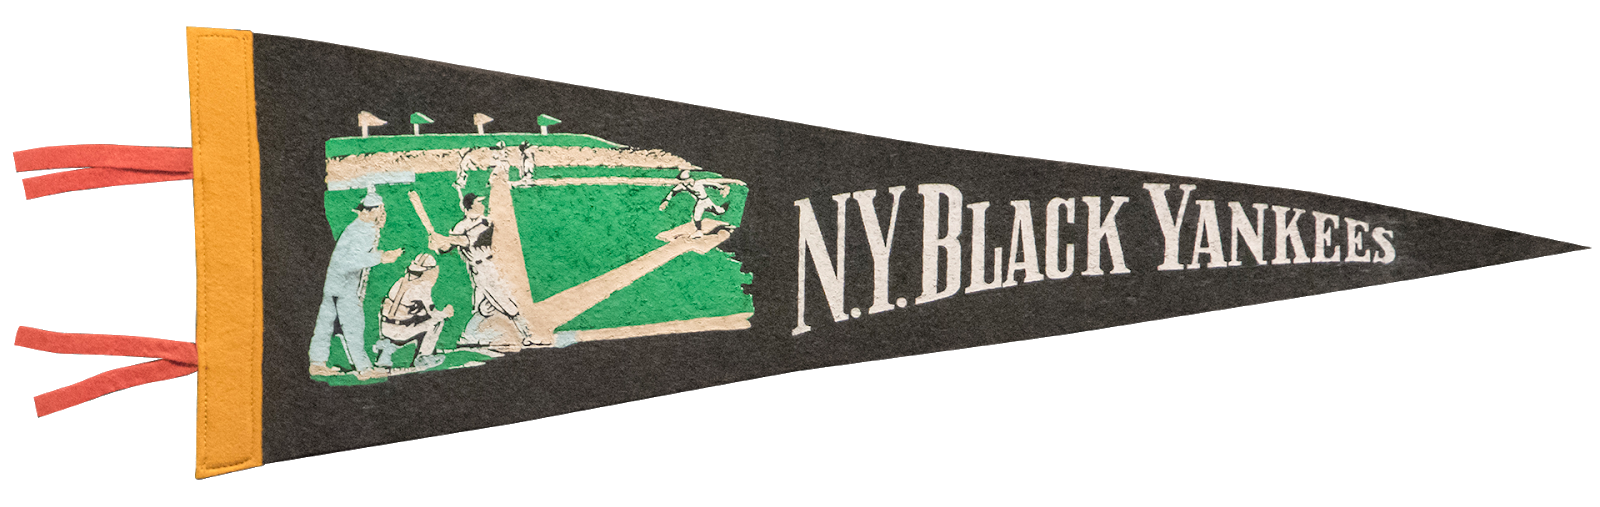 NY Black Yankees pendant from Yogi Berra Museum.